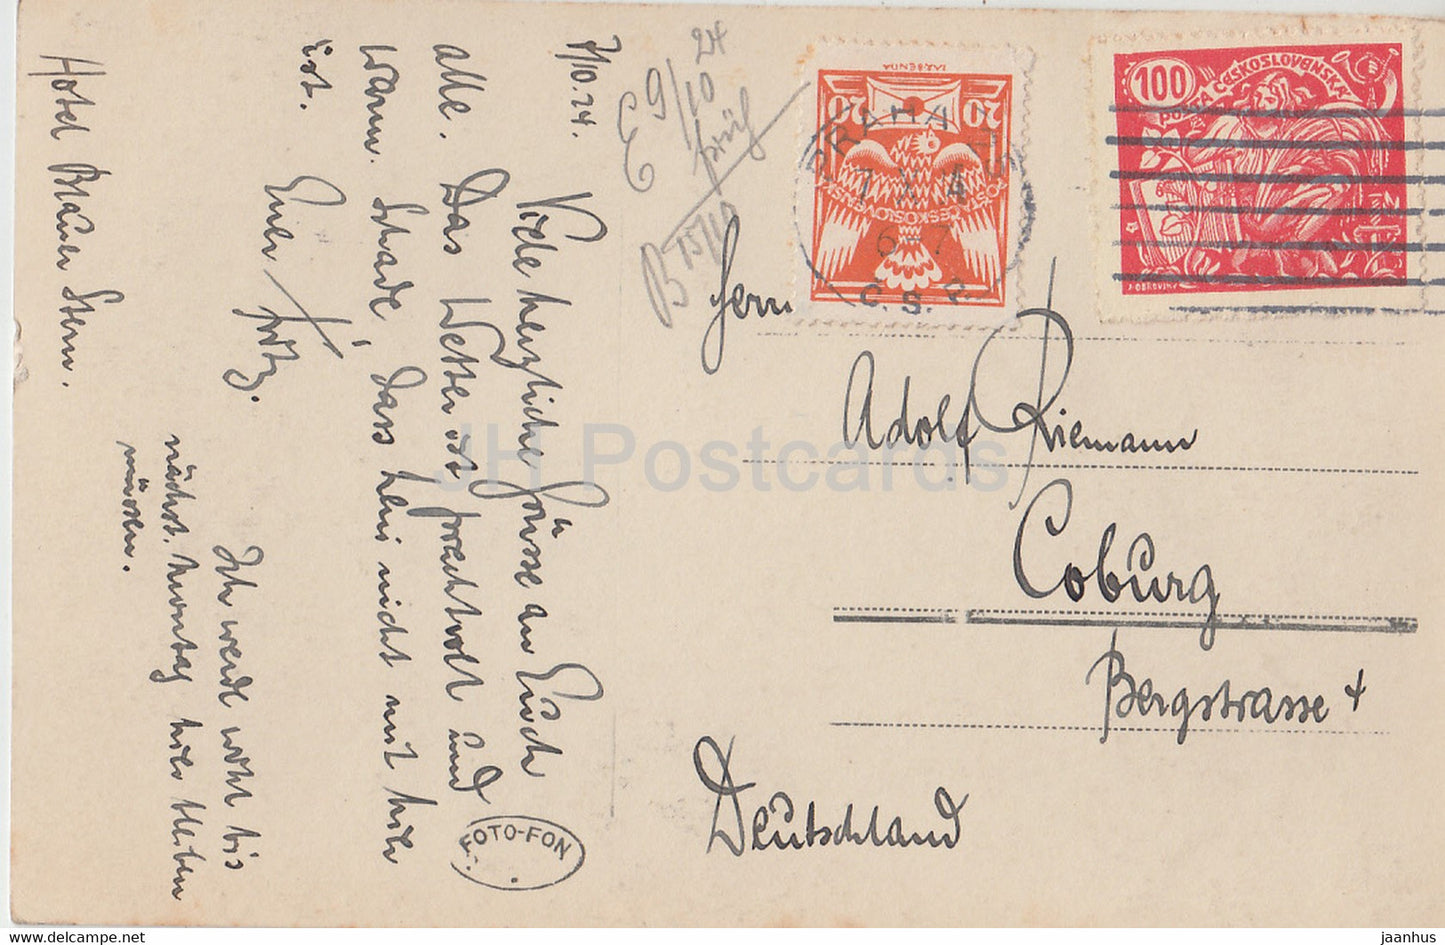 Praha - Prague - Pohled s Chotkovych sadu - 3334 - carte postale ancienne - République tchèque - Tchécoslovaquie - utilisé